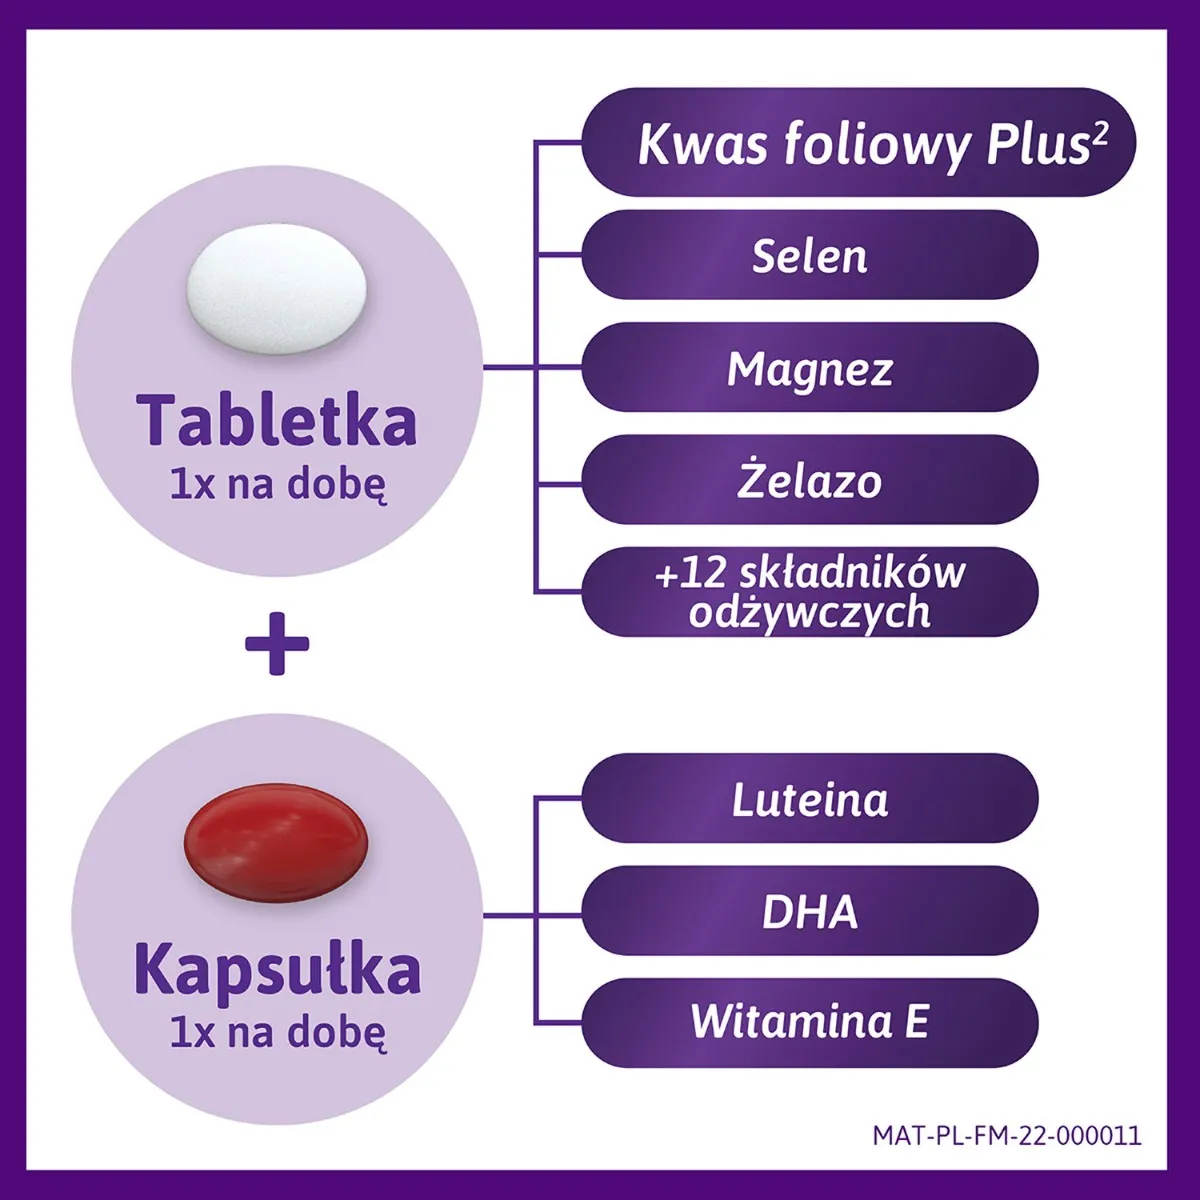 Femibion 2 Ciąża, suplement diety, 56 tabletek + 56 kapsułek 